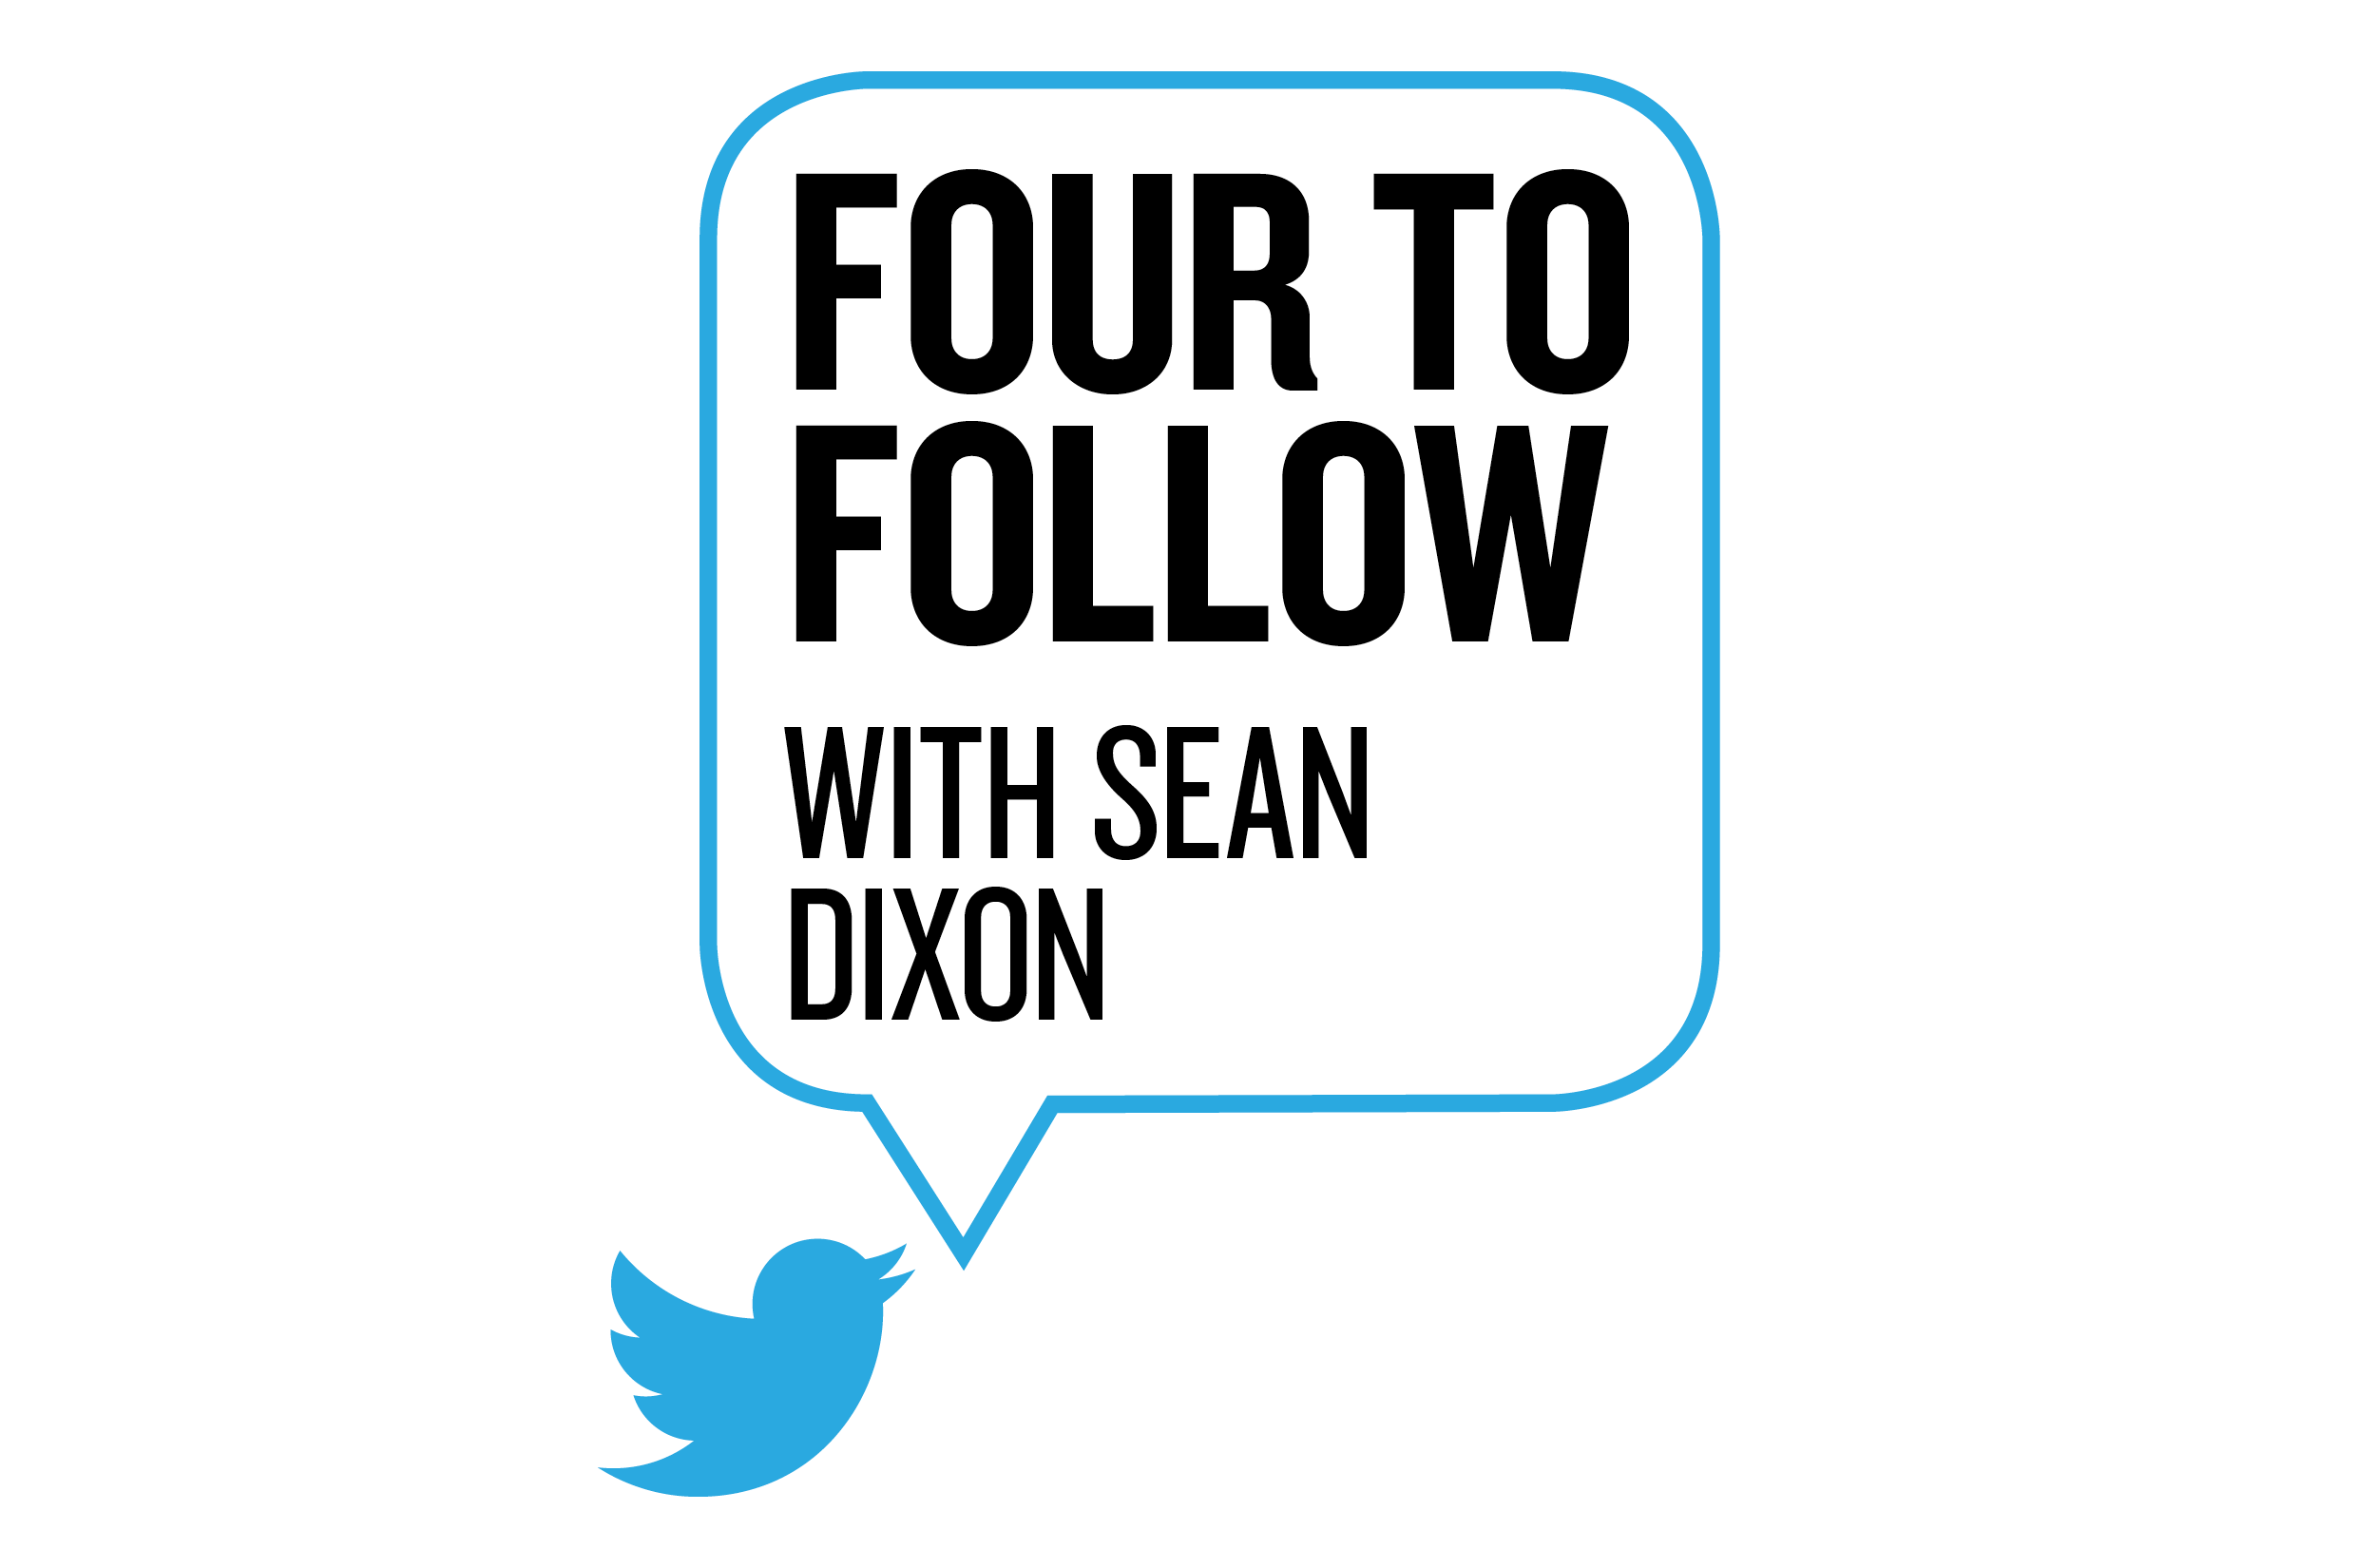 Four to follow with Sean Dixon